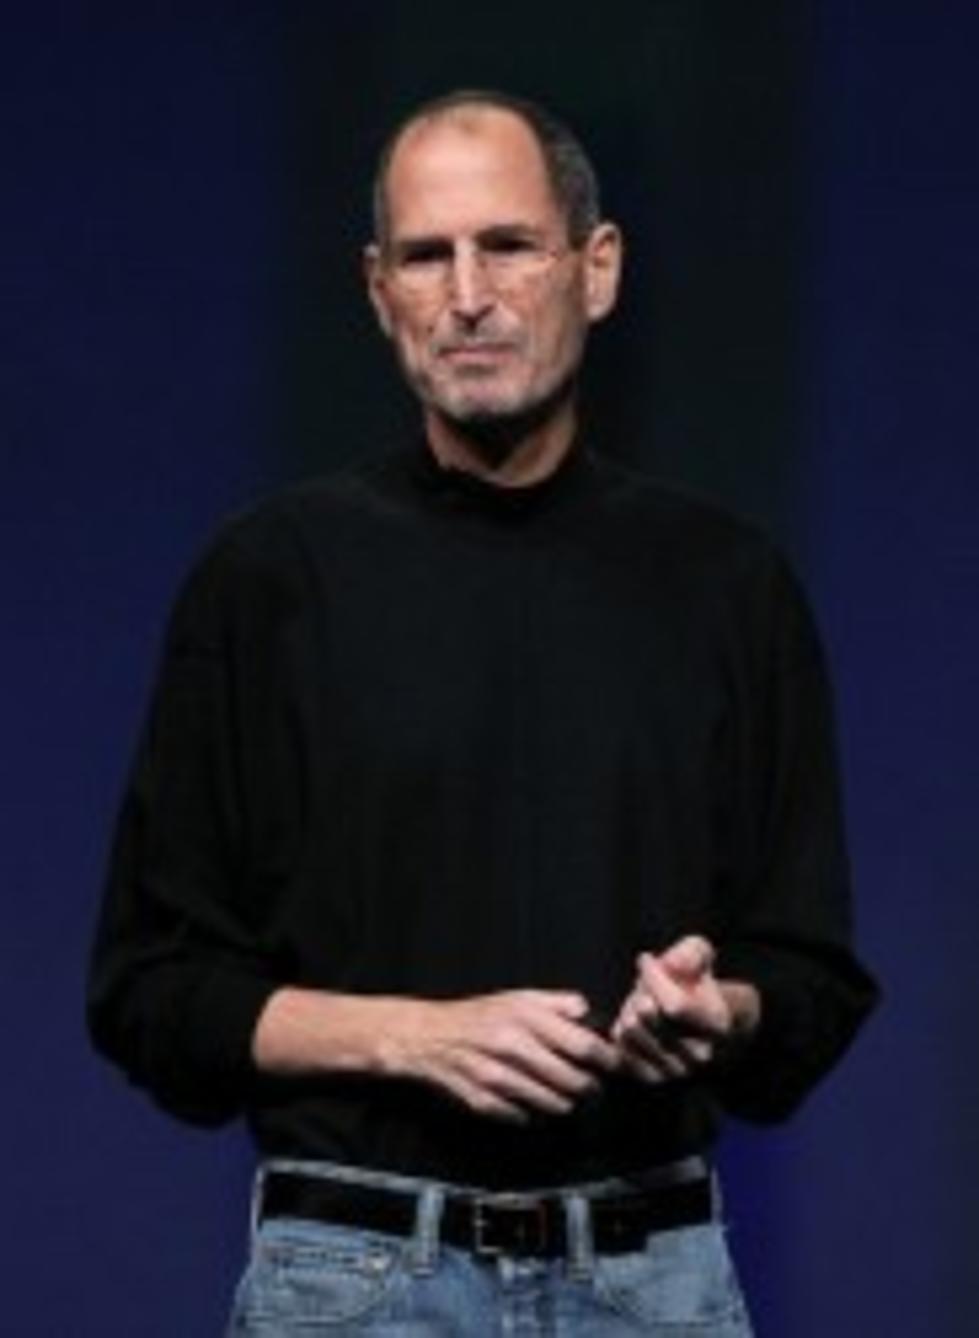 Former Apple CEO Steve Jobs Dies